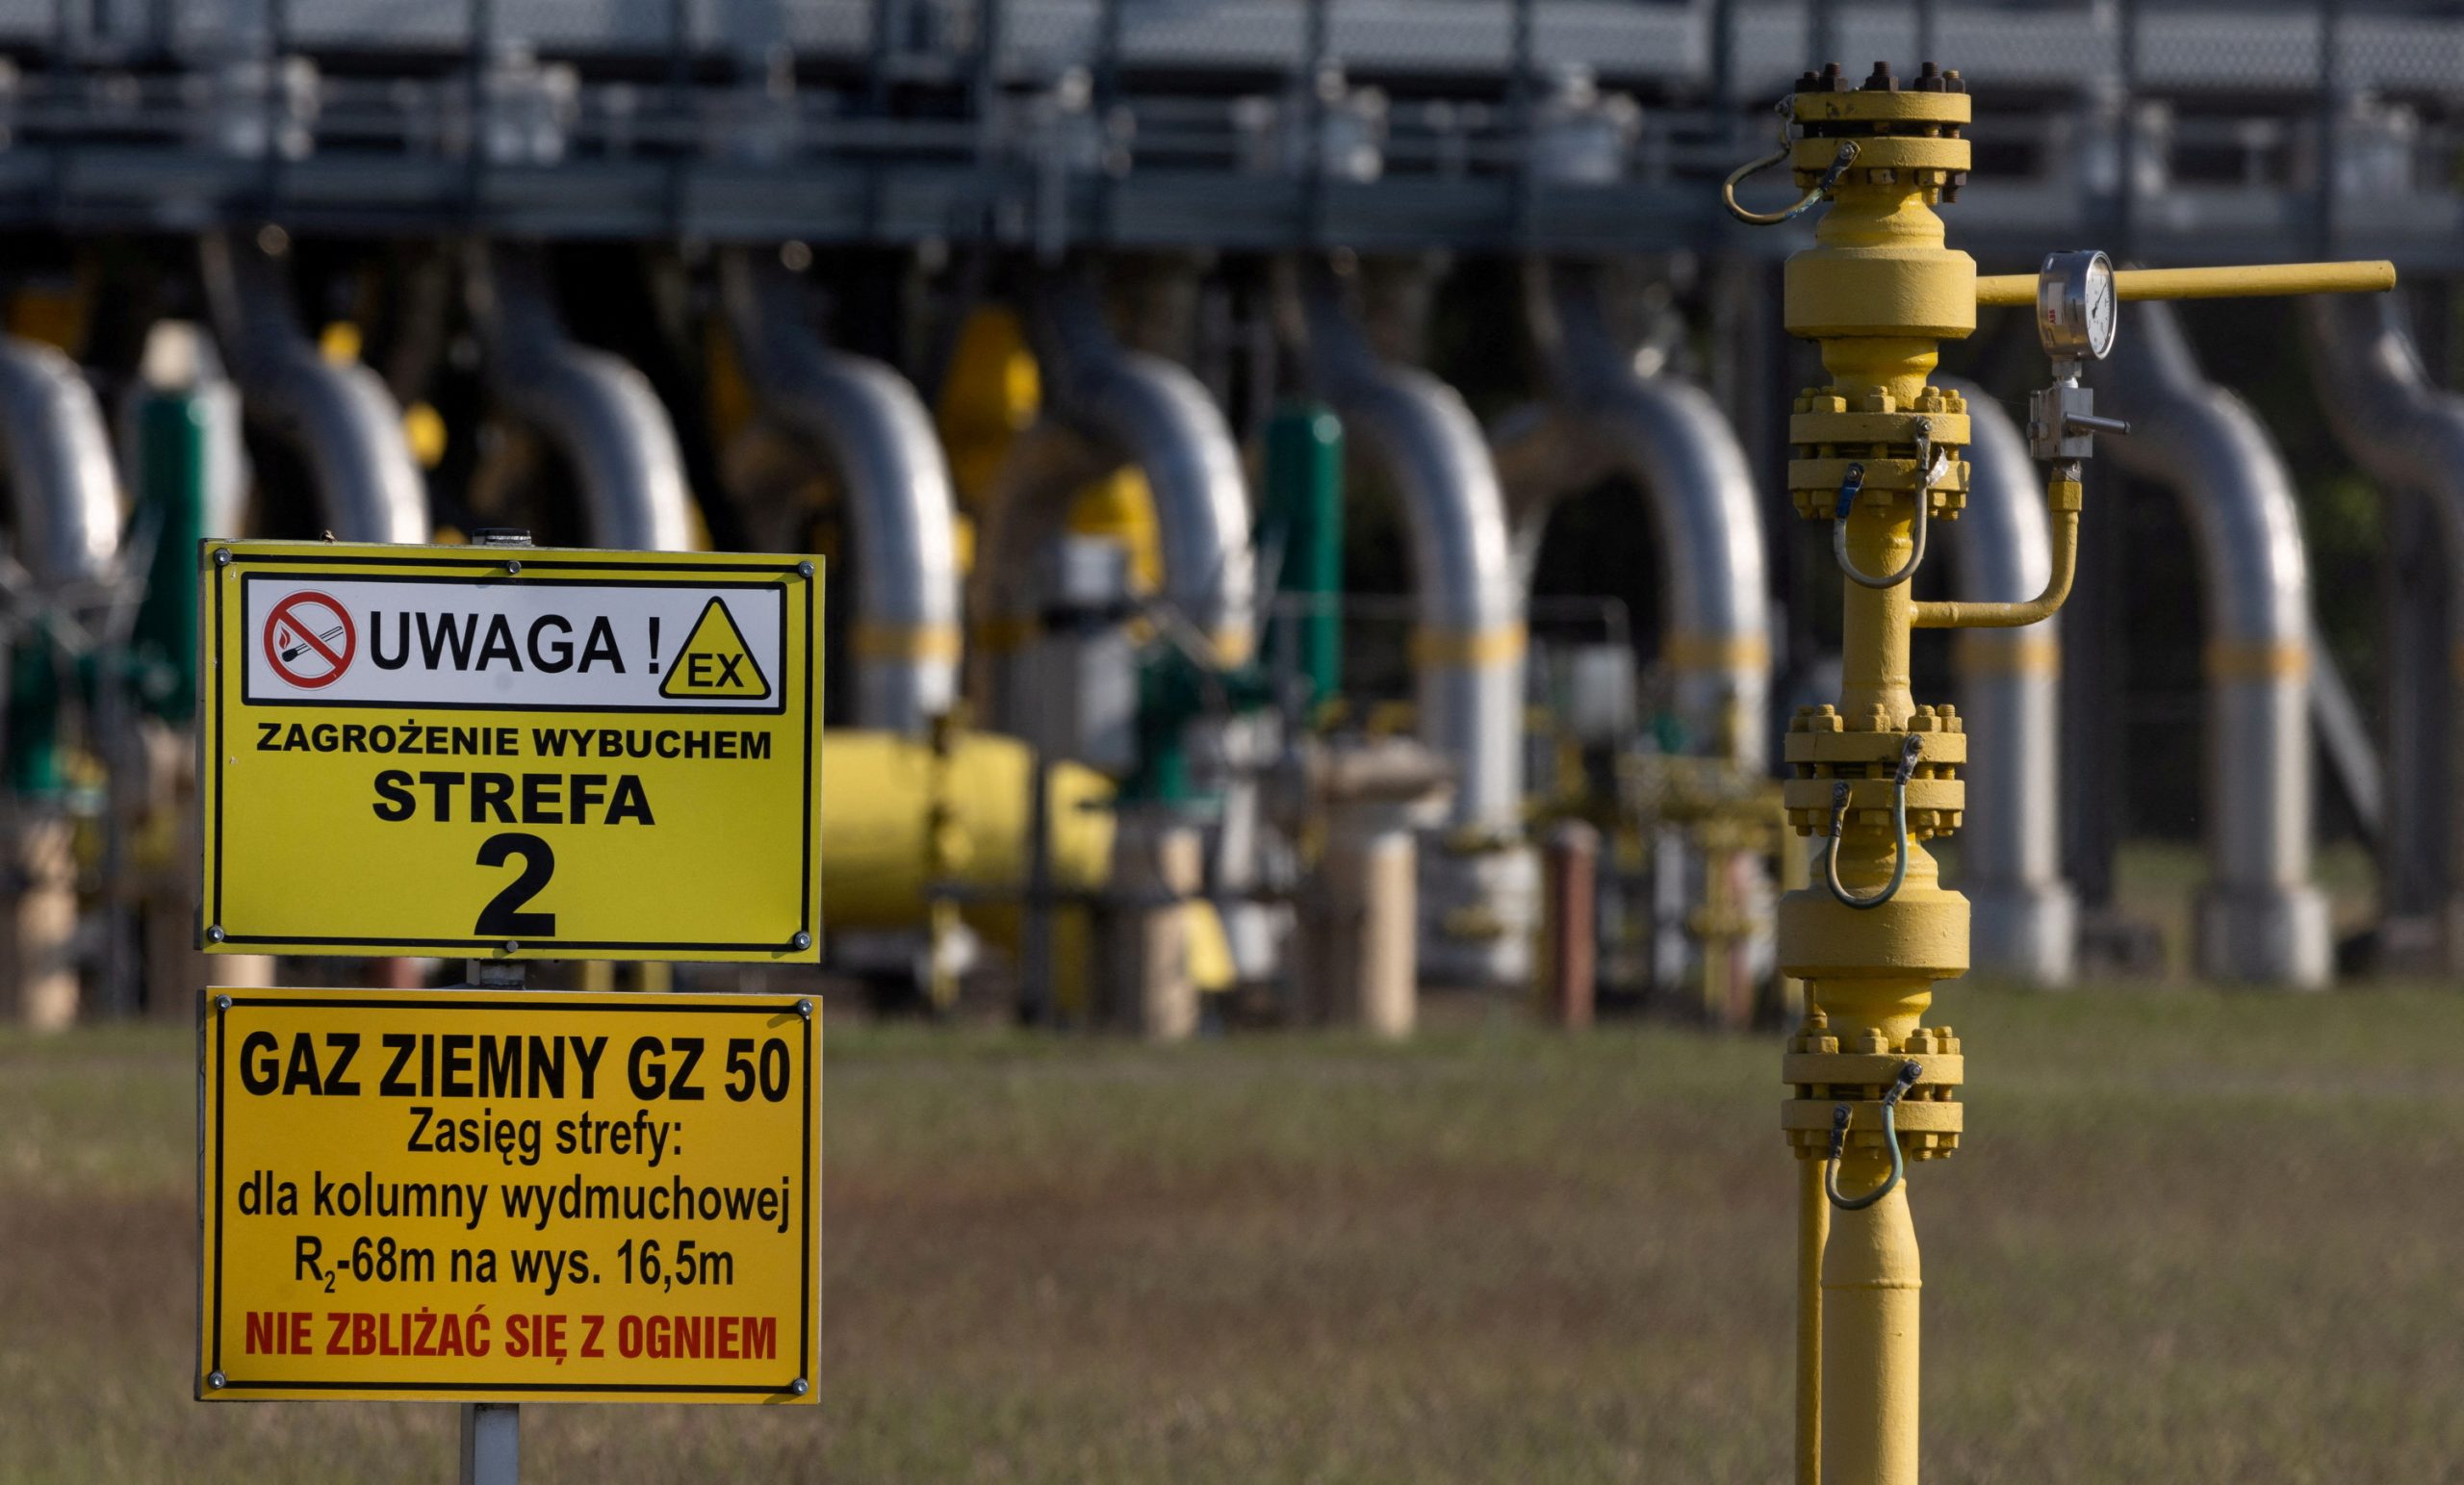 Φυσικό αέριο: Η Gazprom διακόπτει τις παραδόσεις στη γαλλική Engie